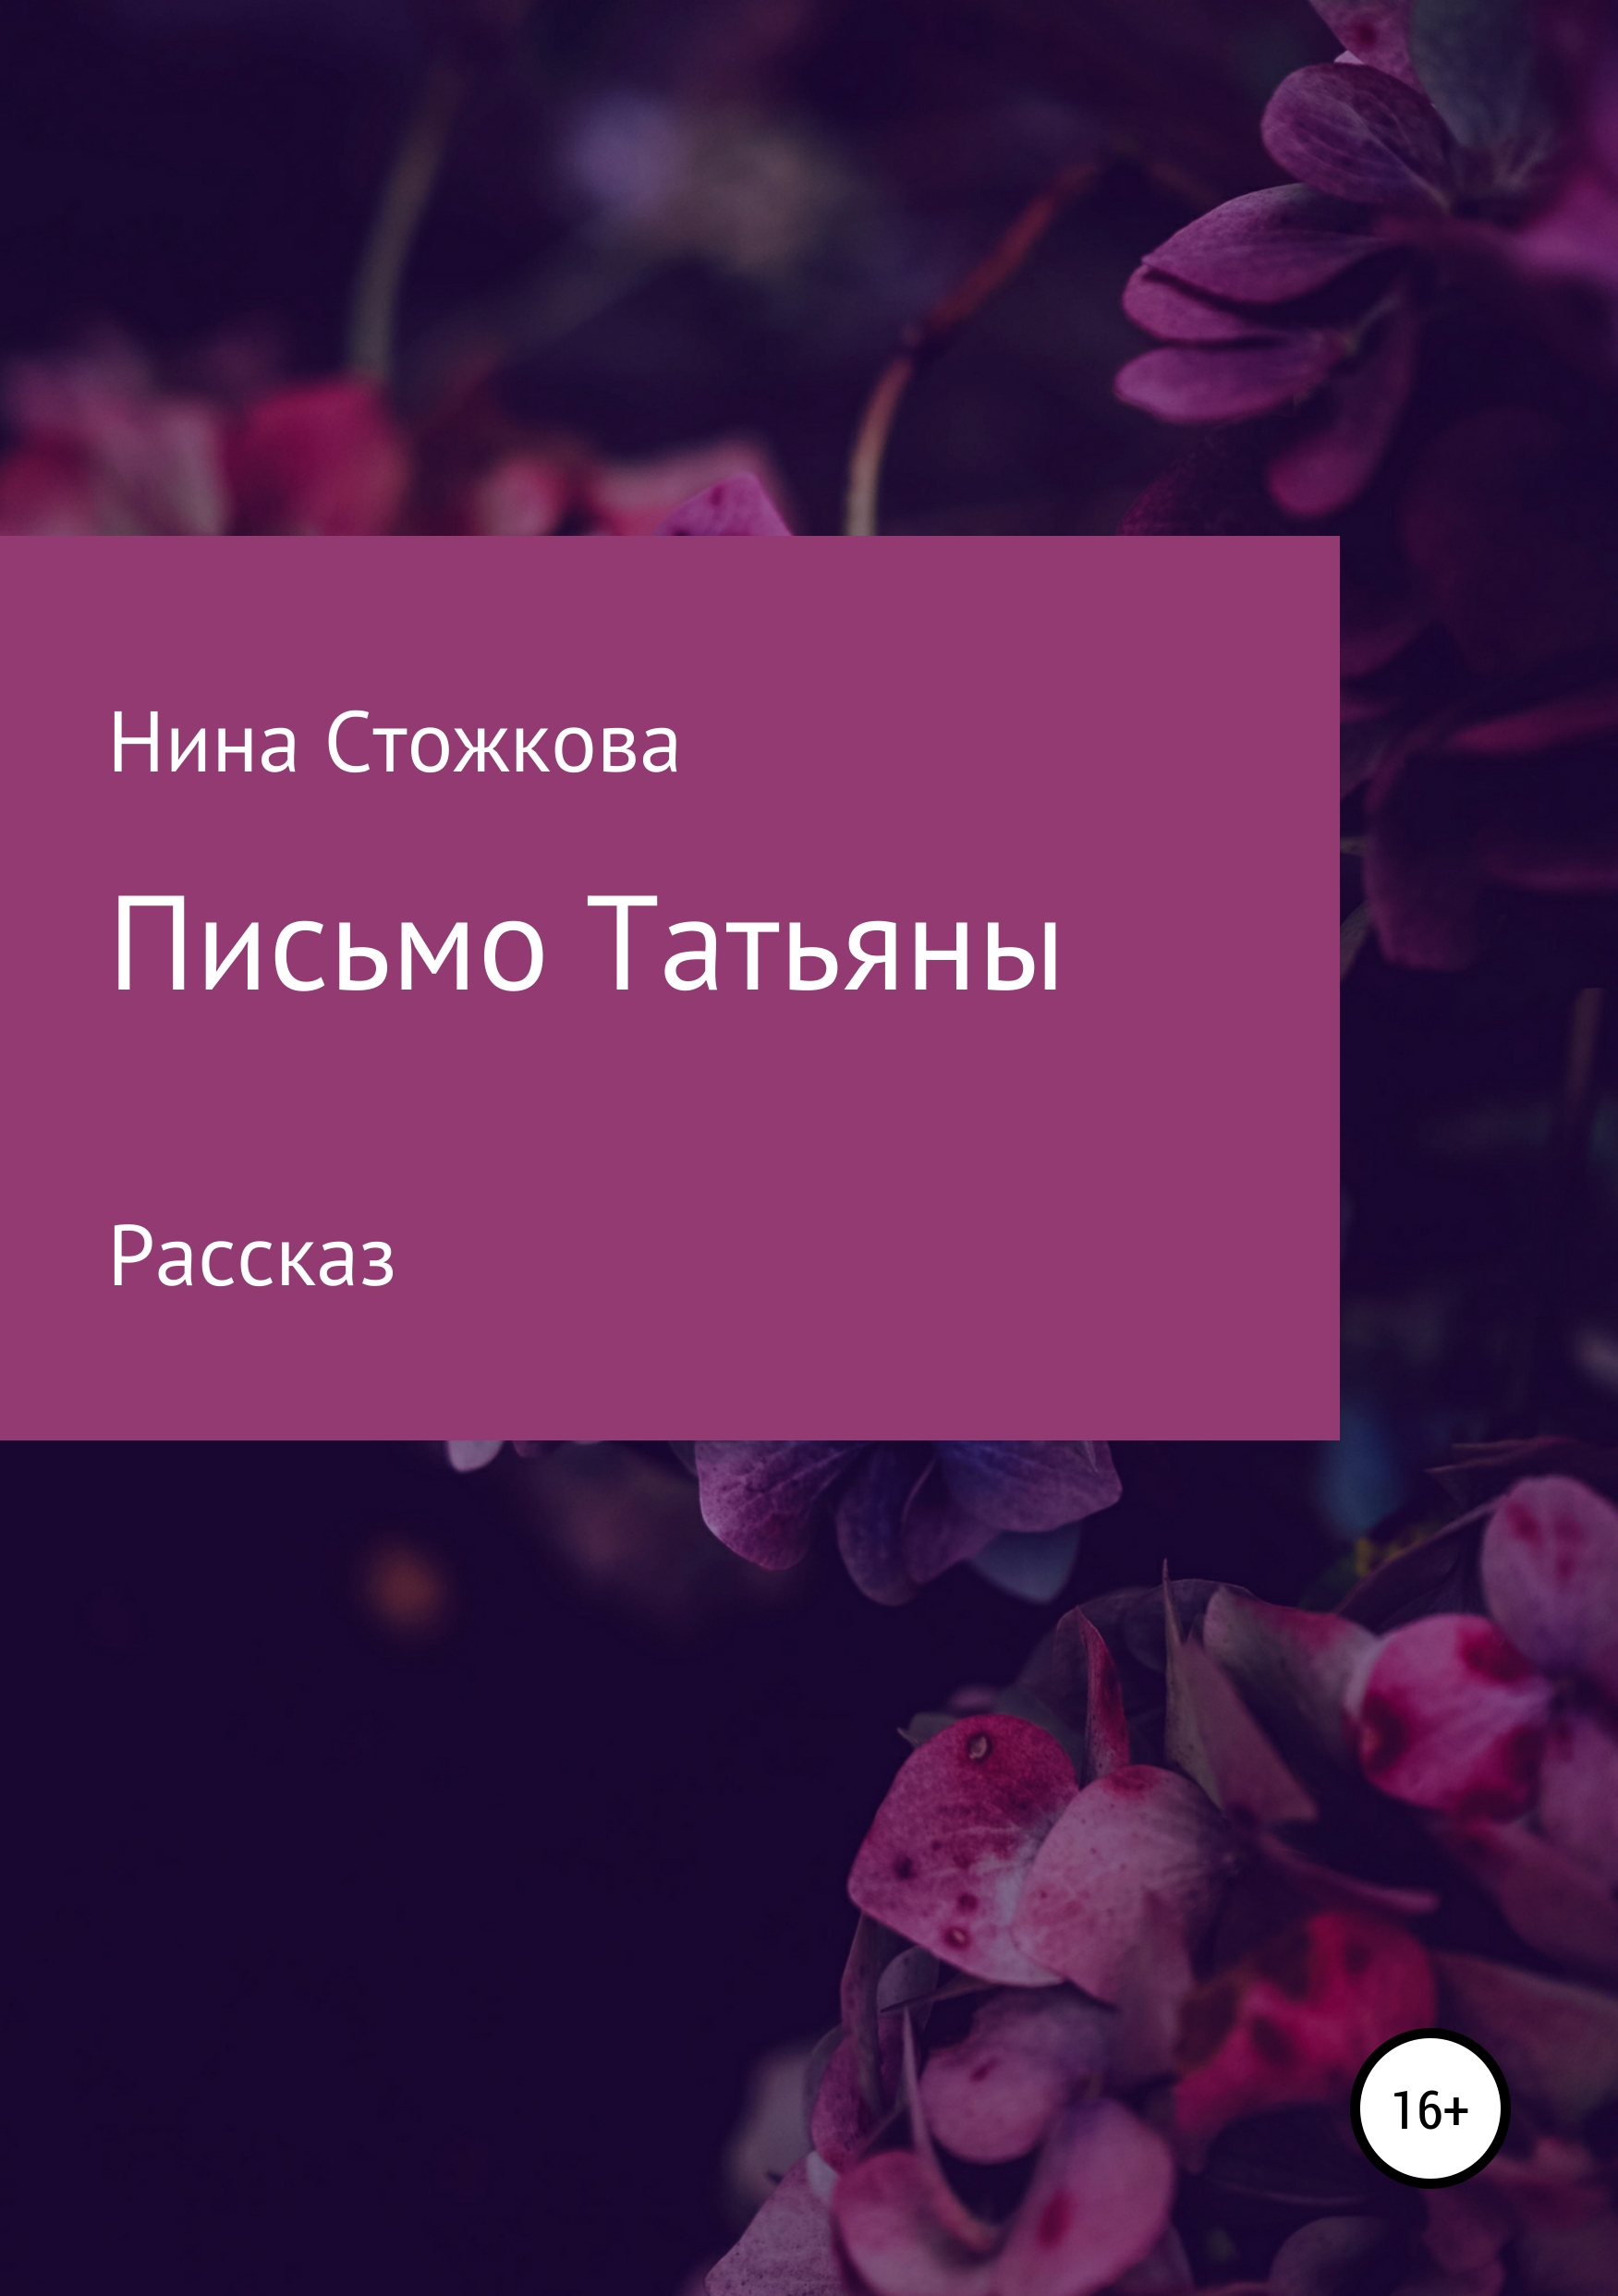 Как Пушкин относится к письму Татьяны в романе «Евгений Онегин»